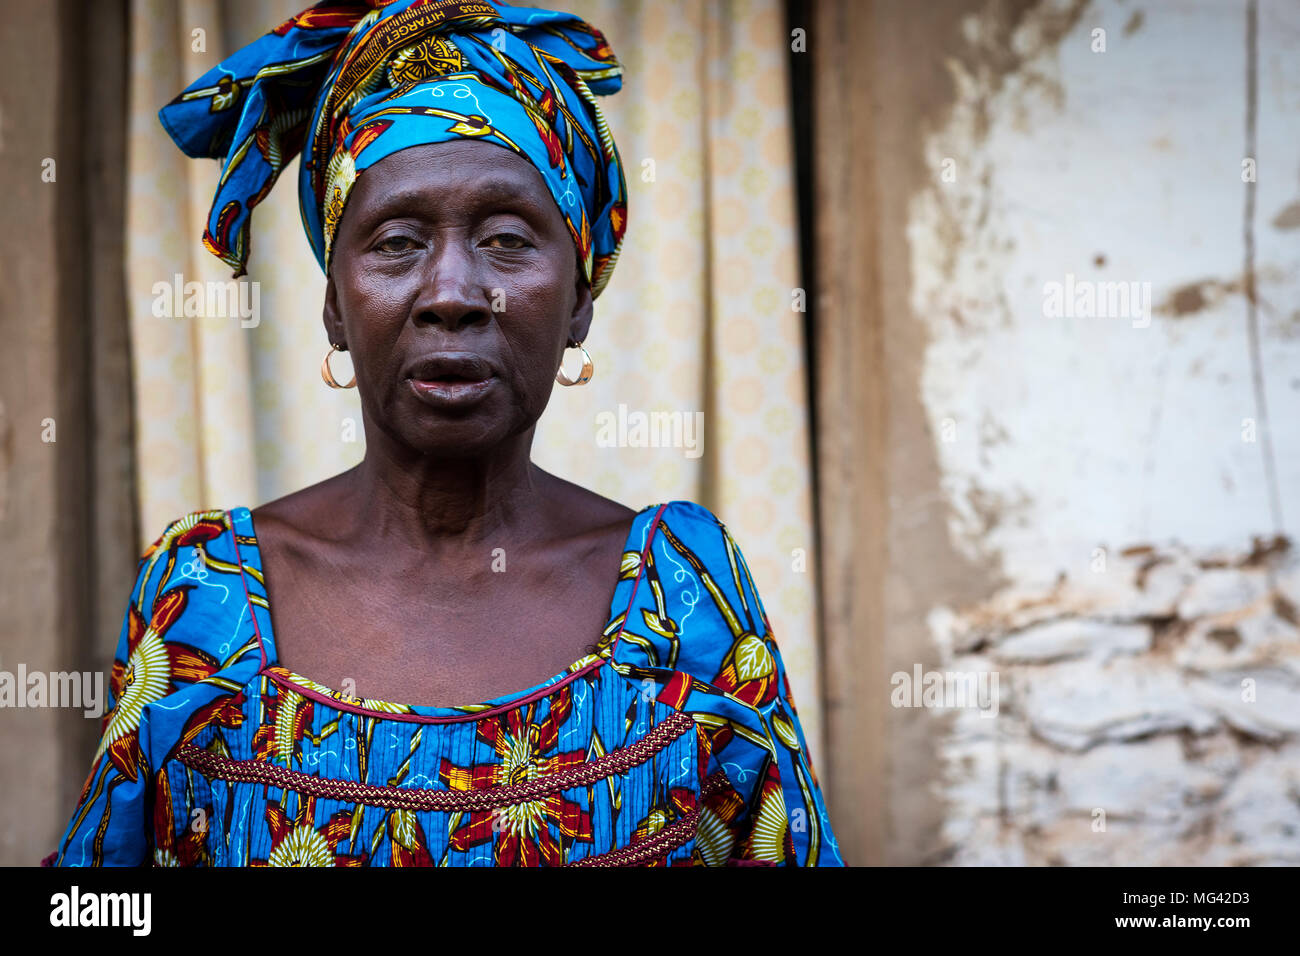 Bissau, Guinée-Bissau - le 29 janvier 2018 : Portrait d'une femme africaine portant une robe colorée dans un bidonville de la ville de Bissau, en Guinée Banque D'Images